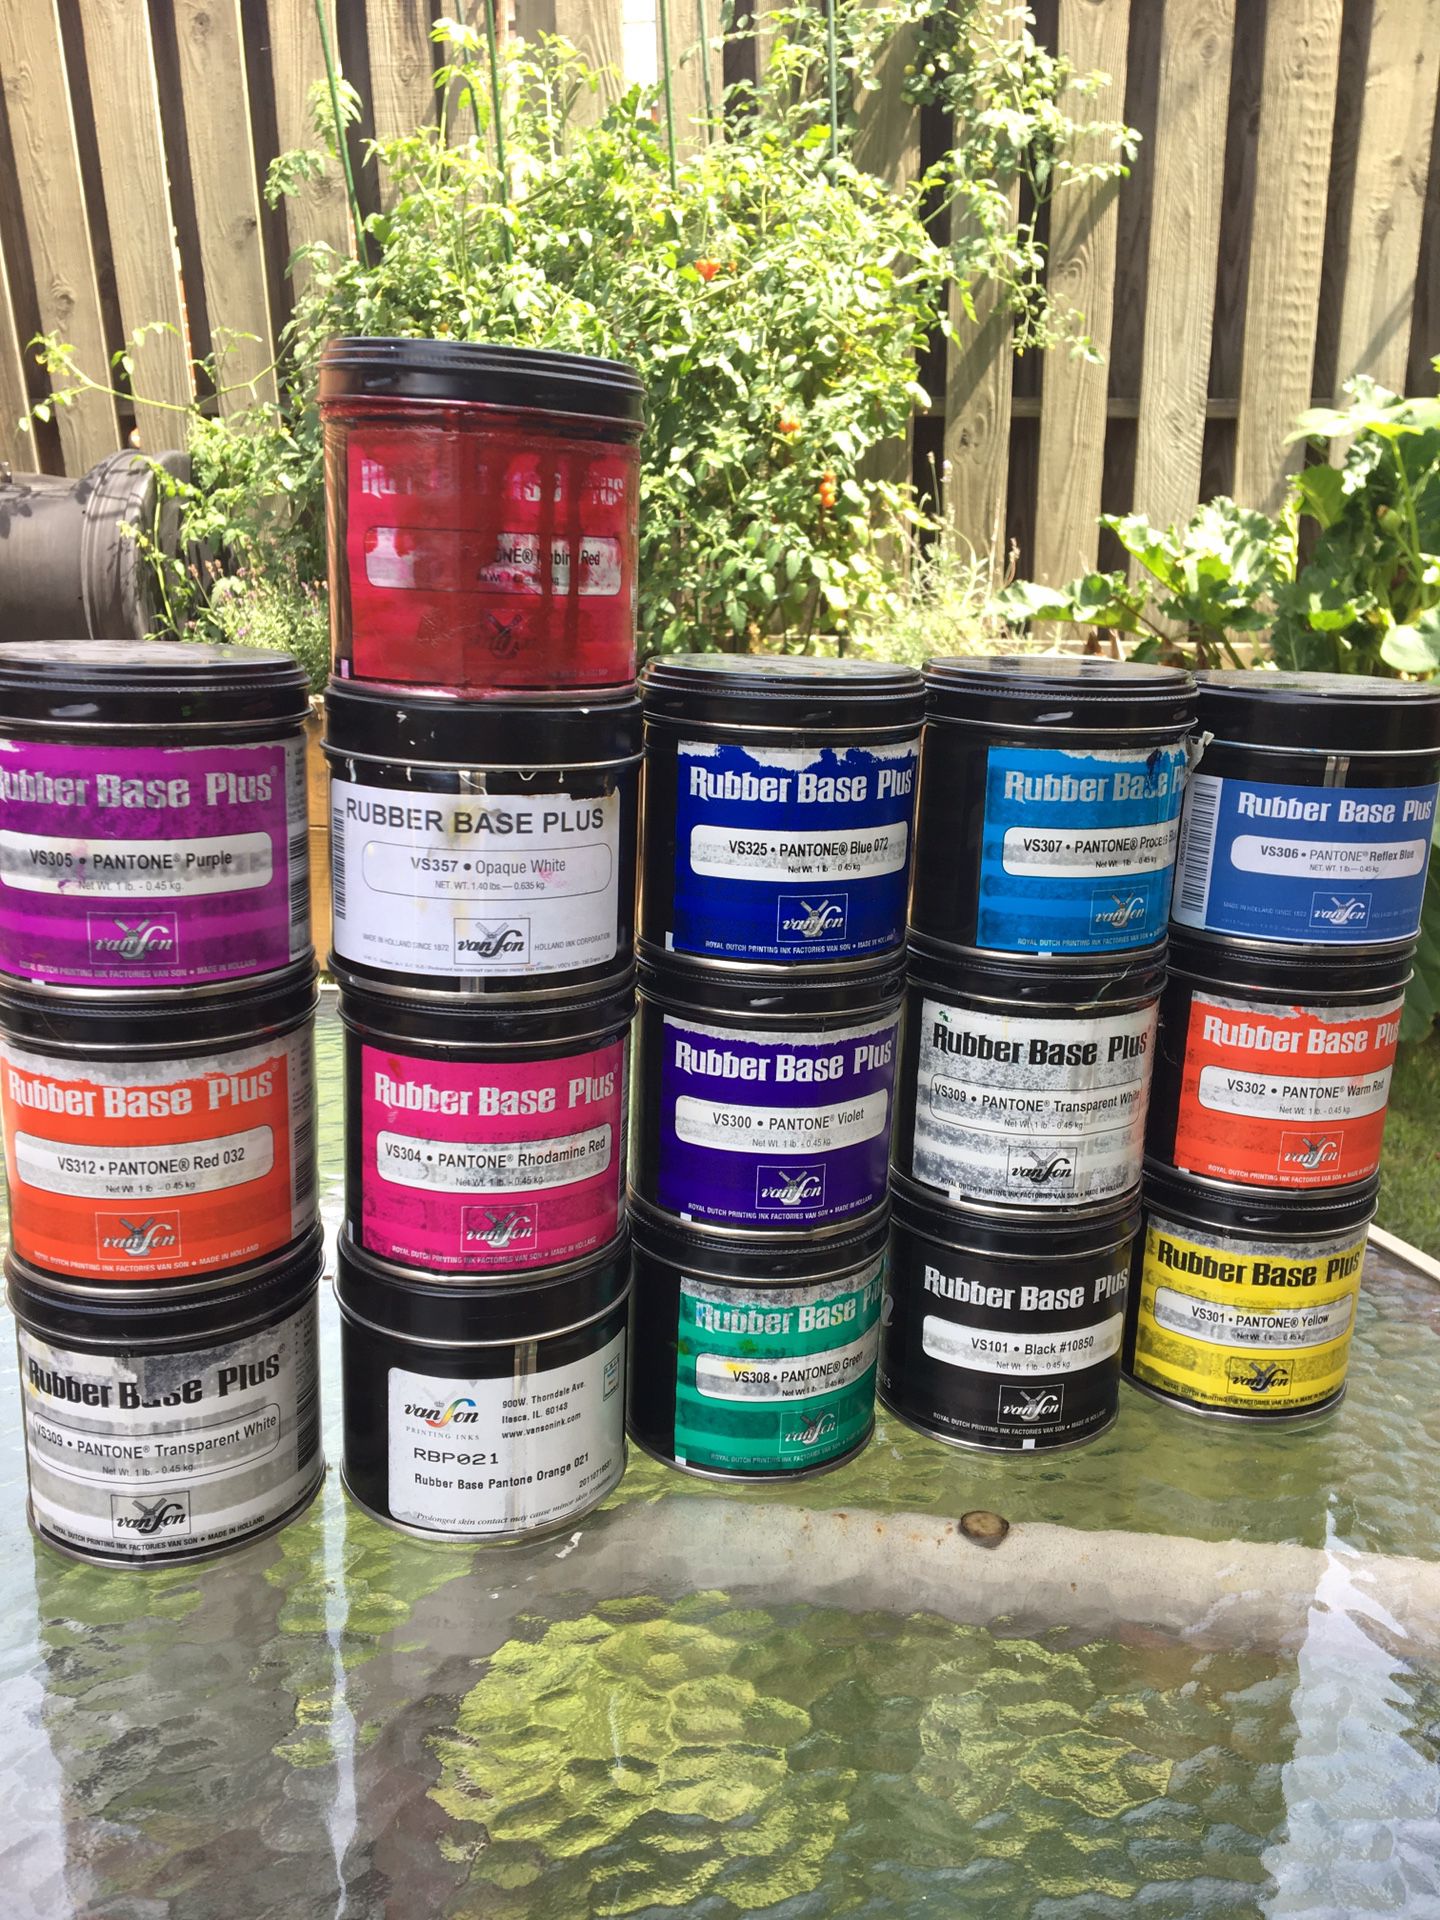 Vanson rubber based letterpress ink lot - full range of colors